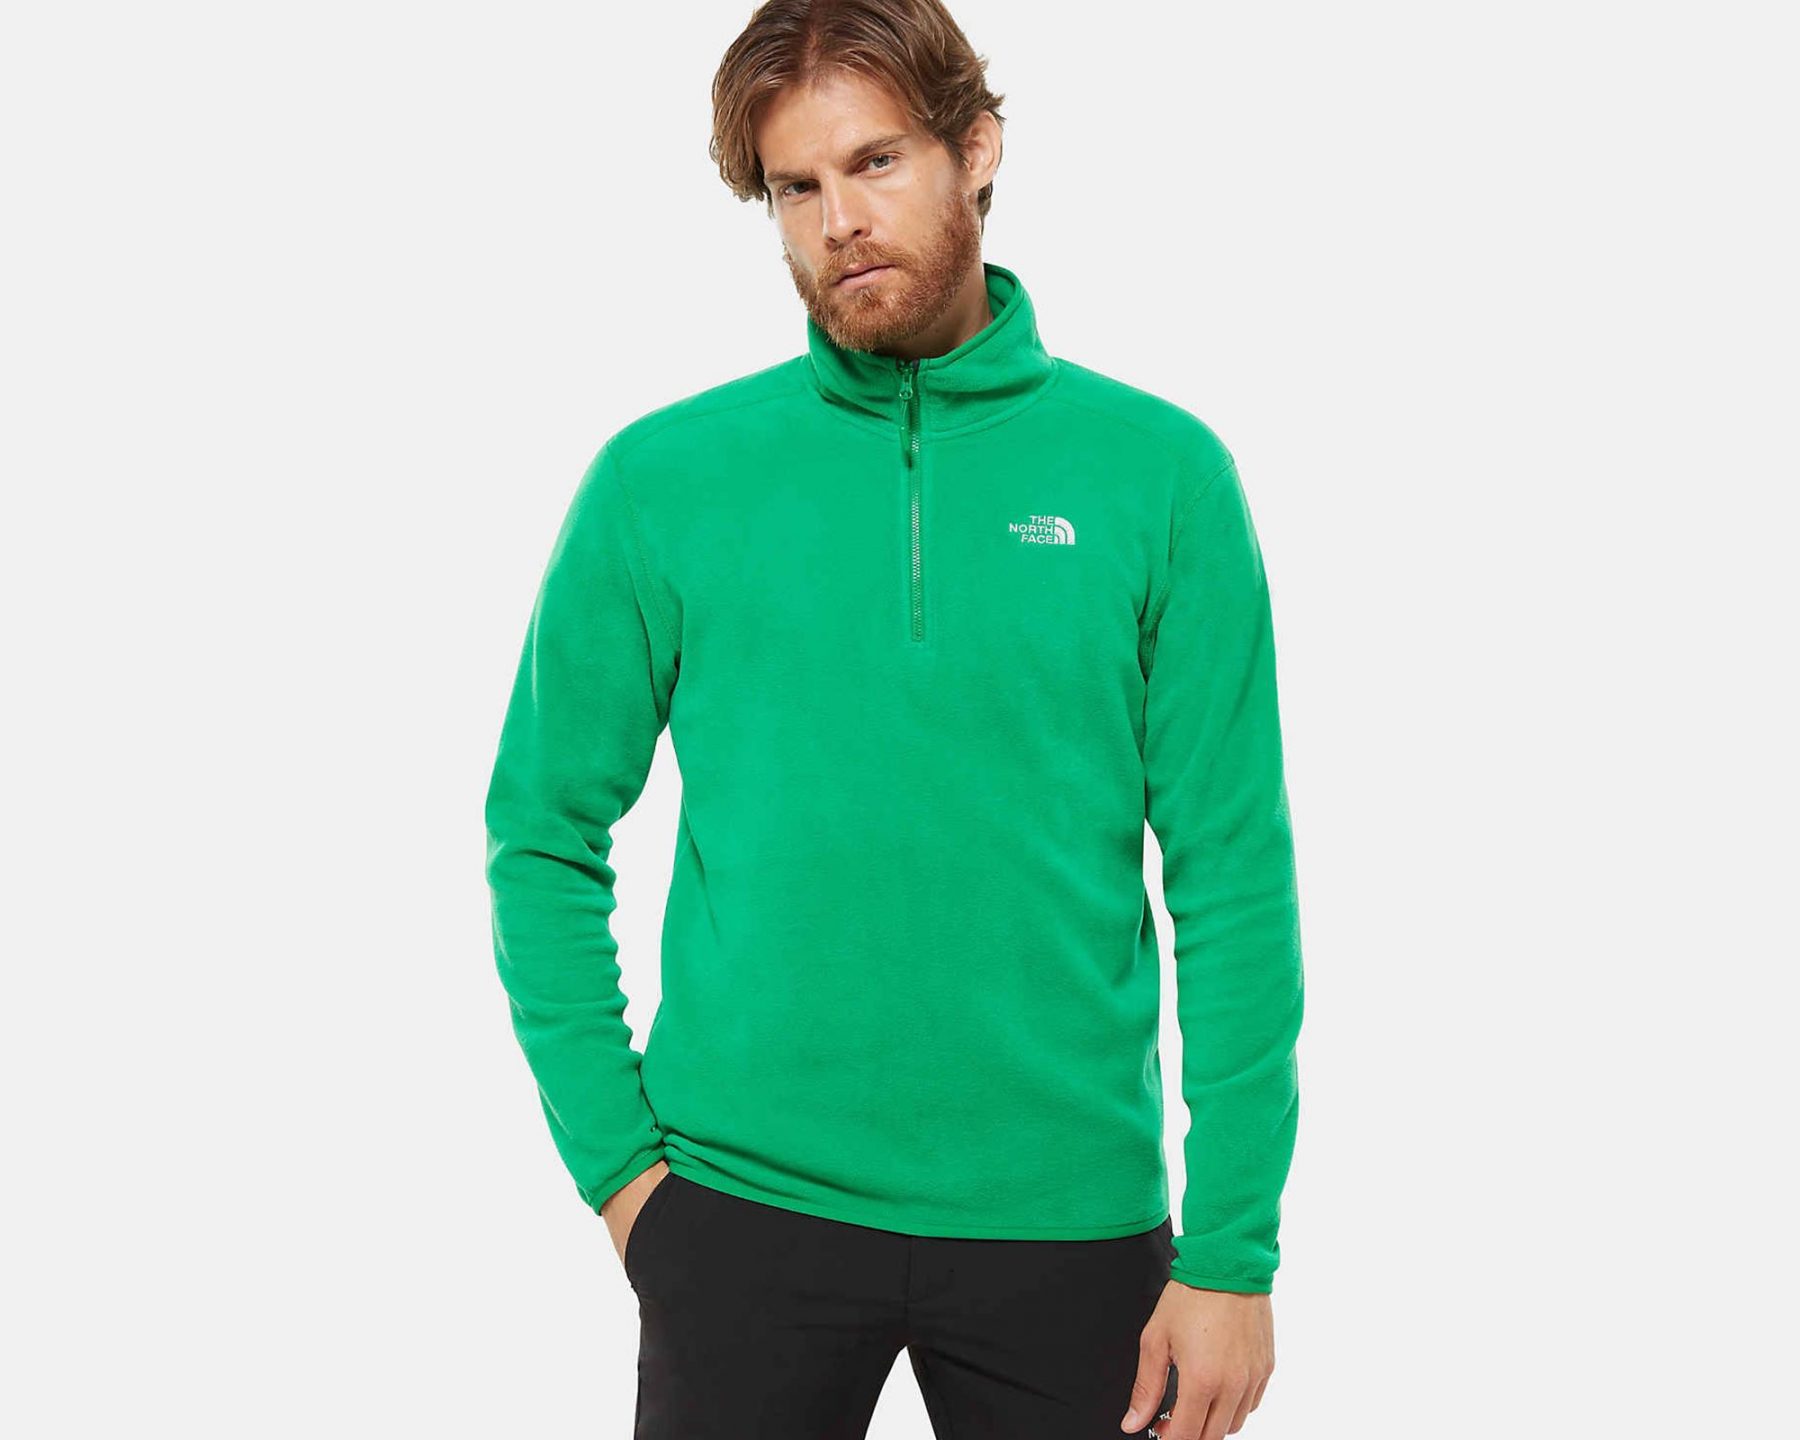 سویشرت کوهنوردی زیپ دار سبز مردانه